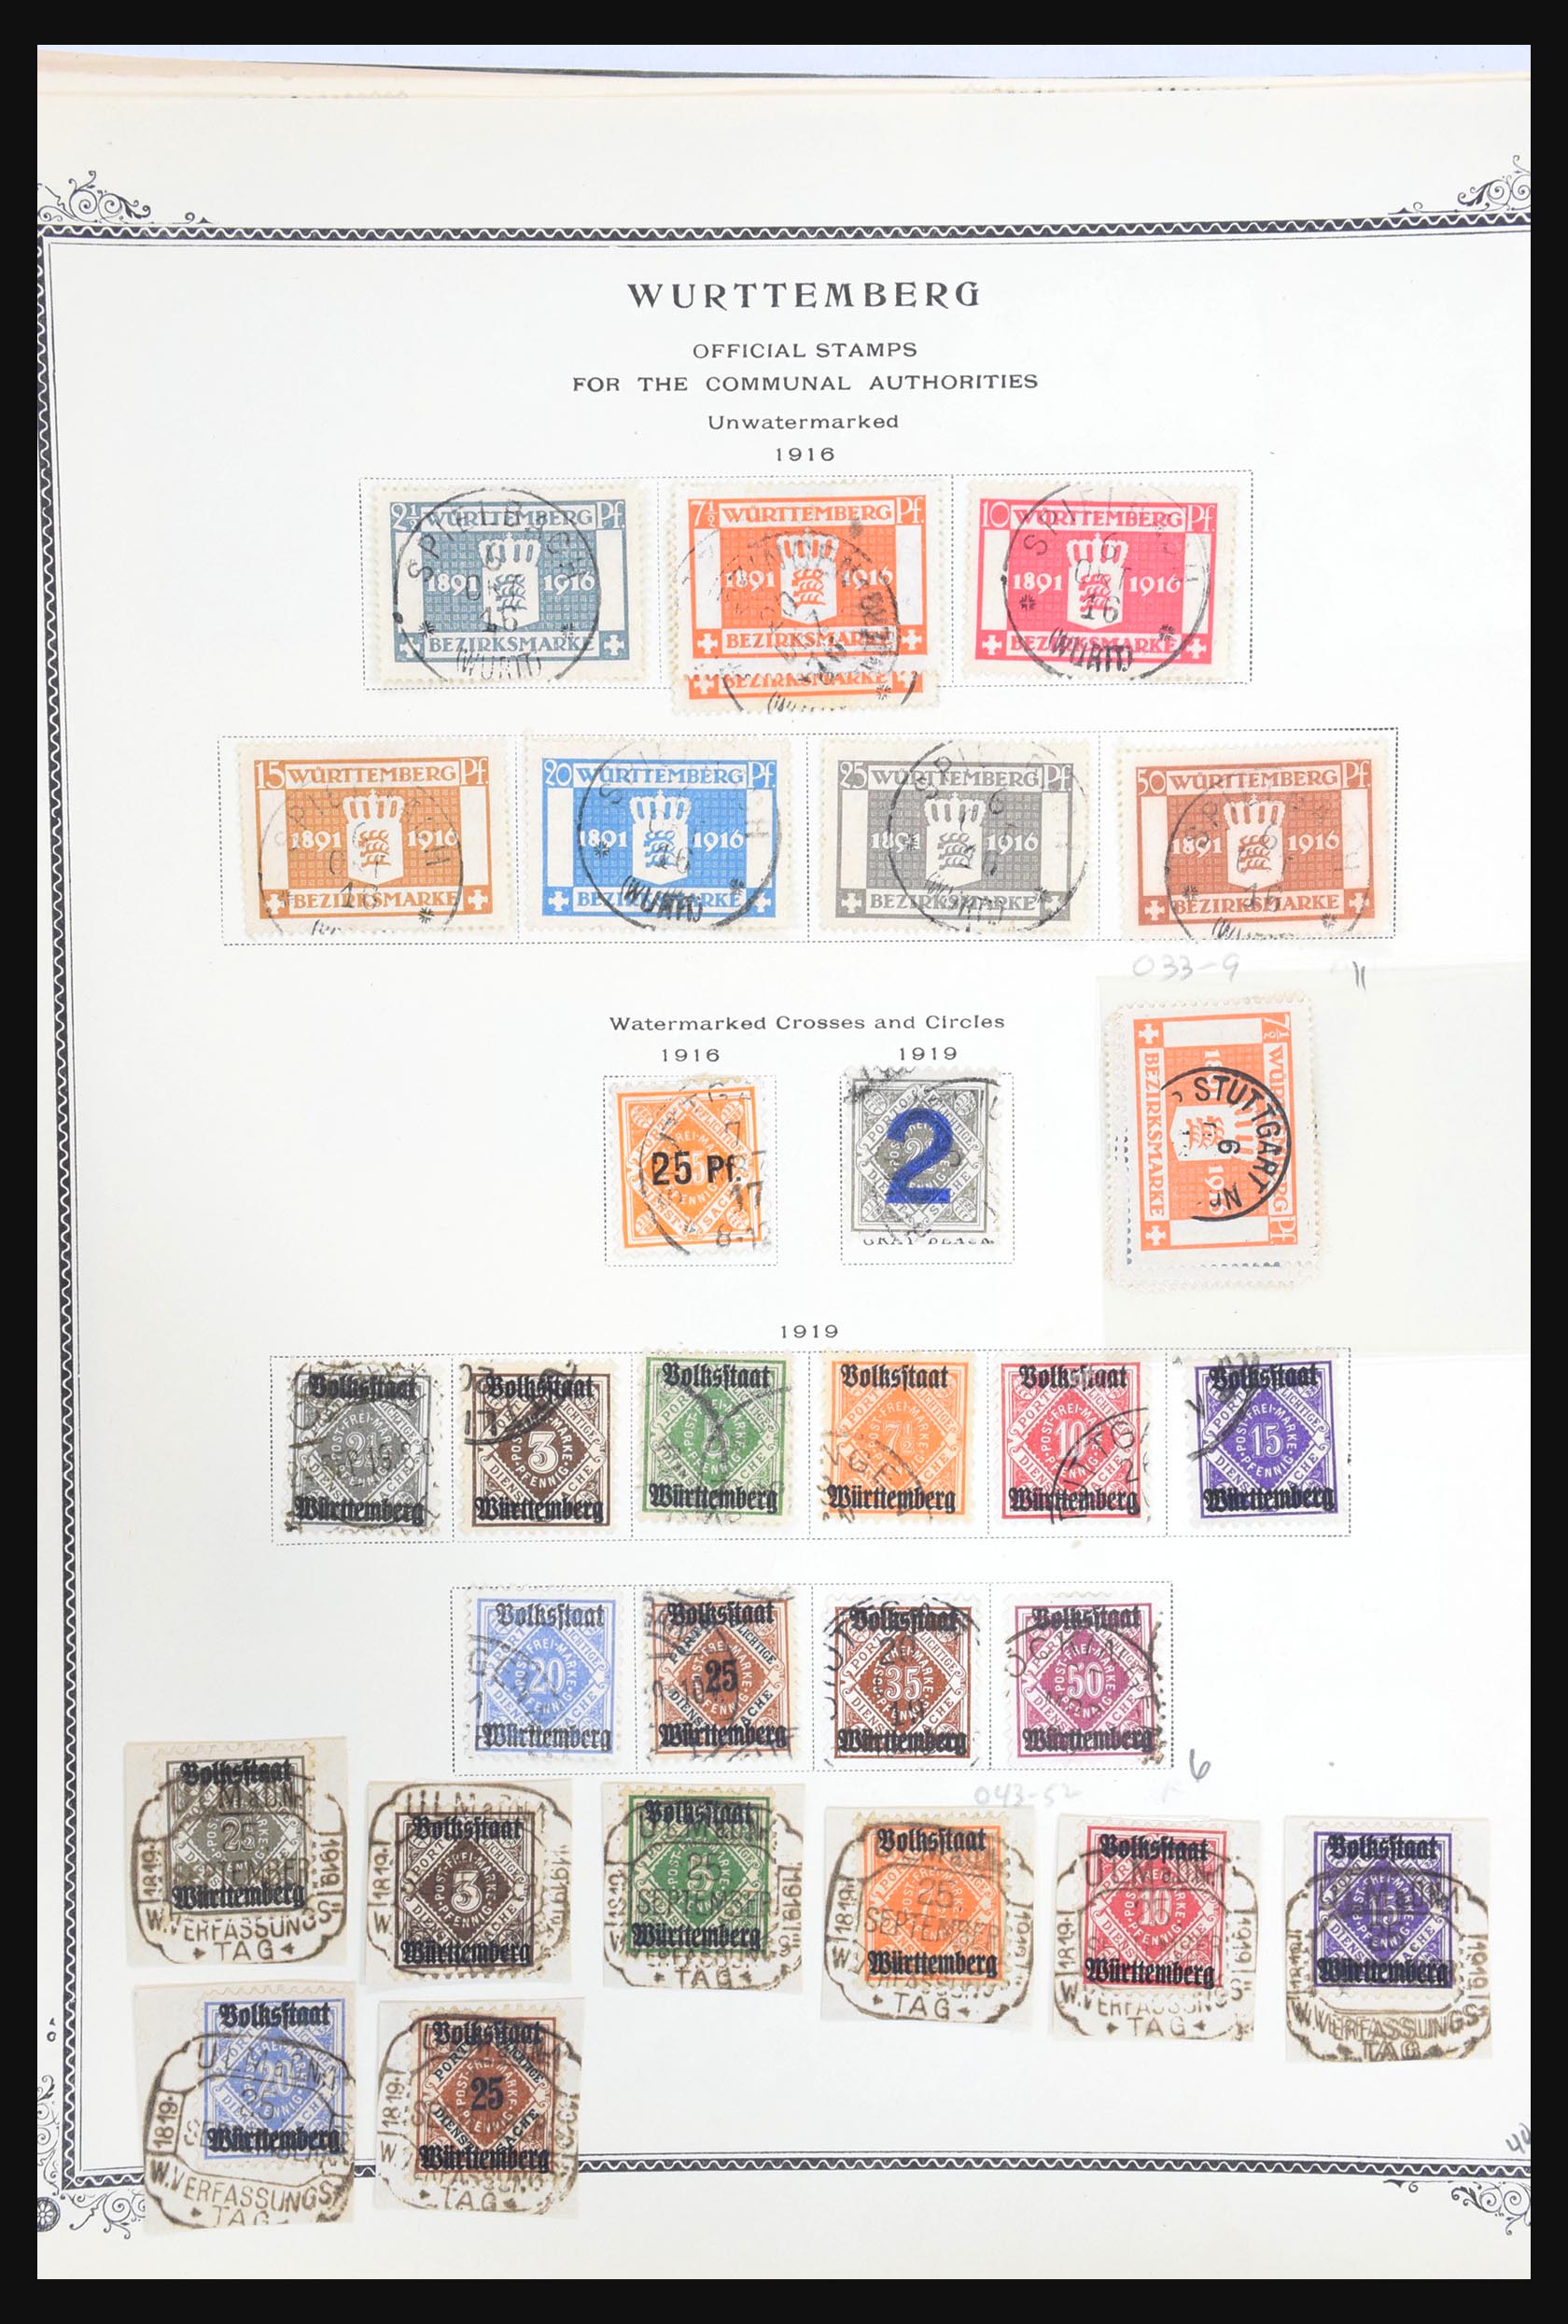 31300 203 - 31300 Duitsland superverzameling 1849-1990.